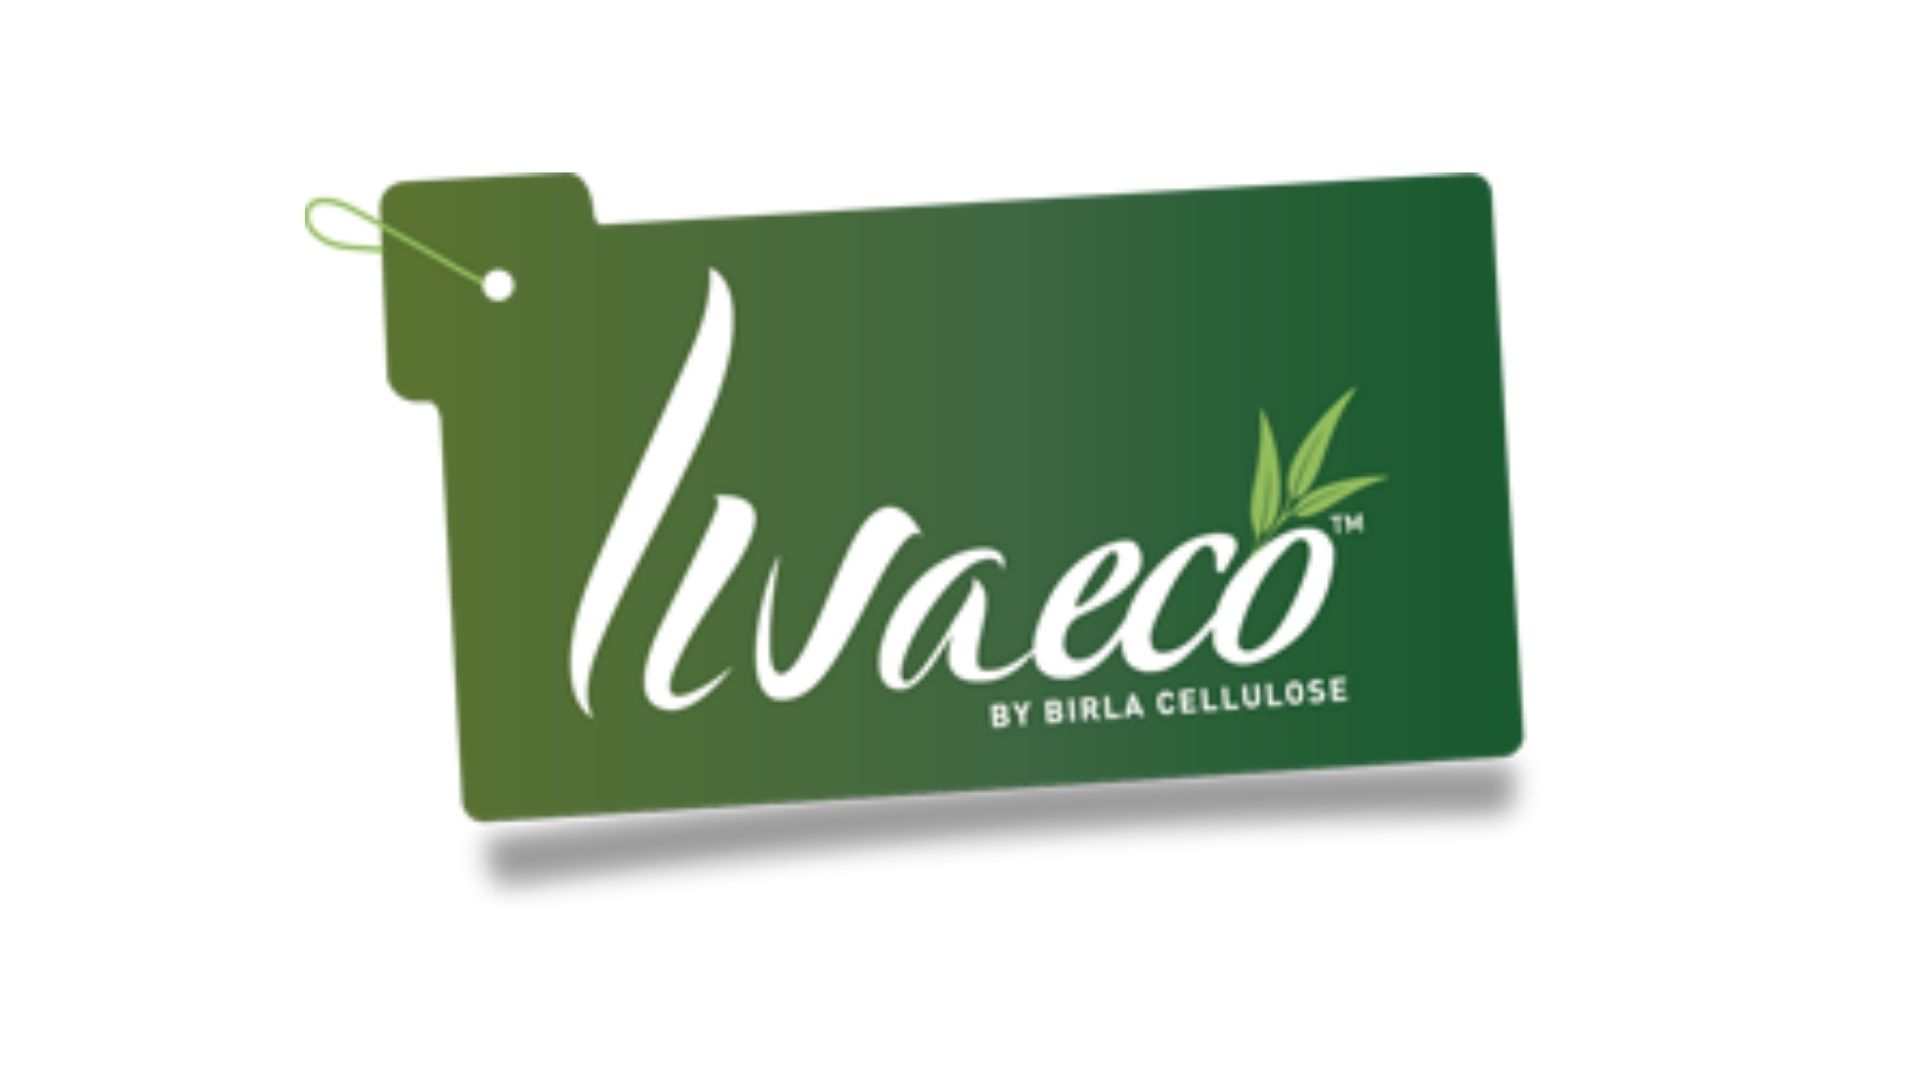 logo Livaeco